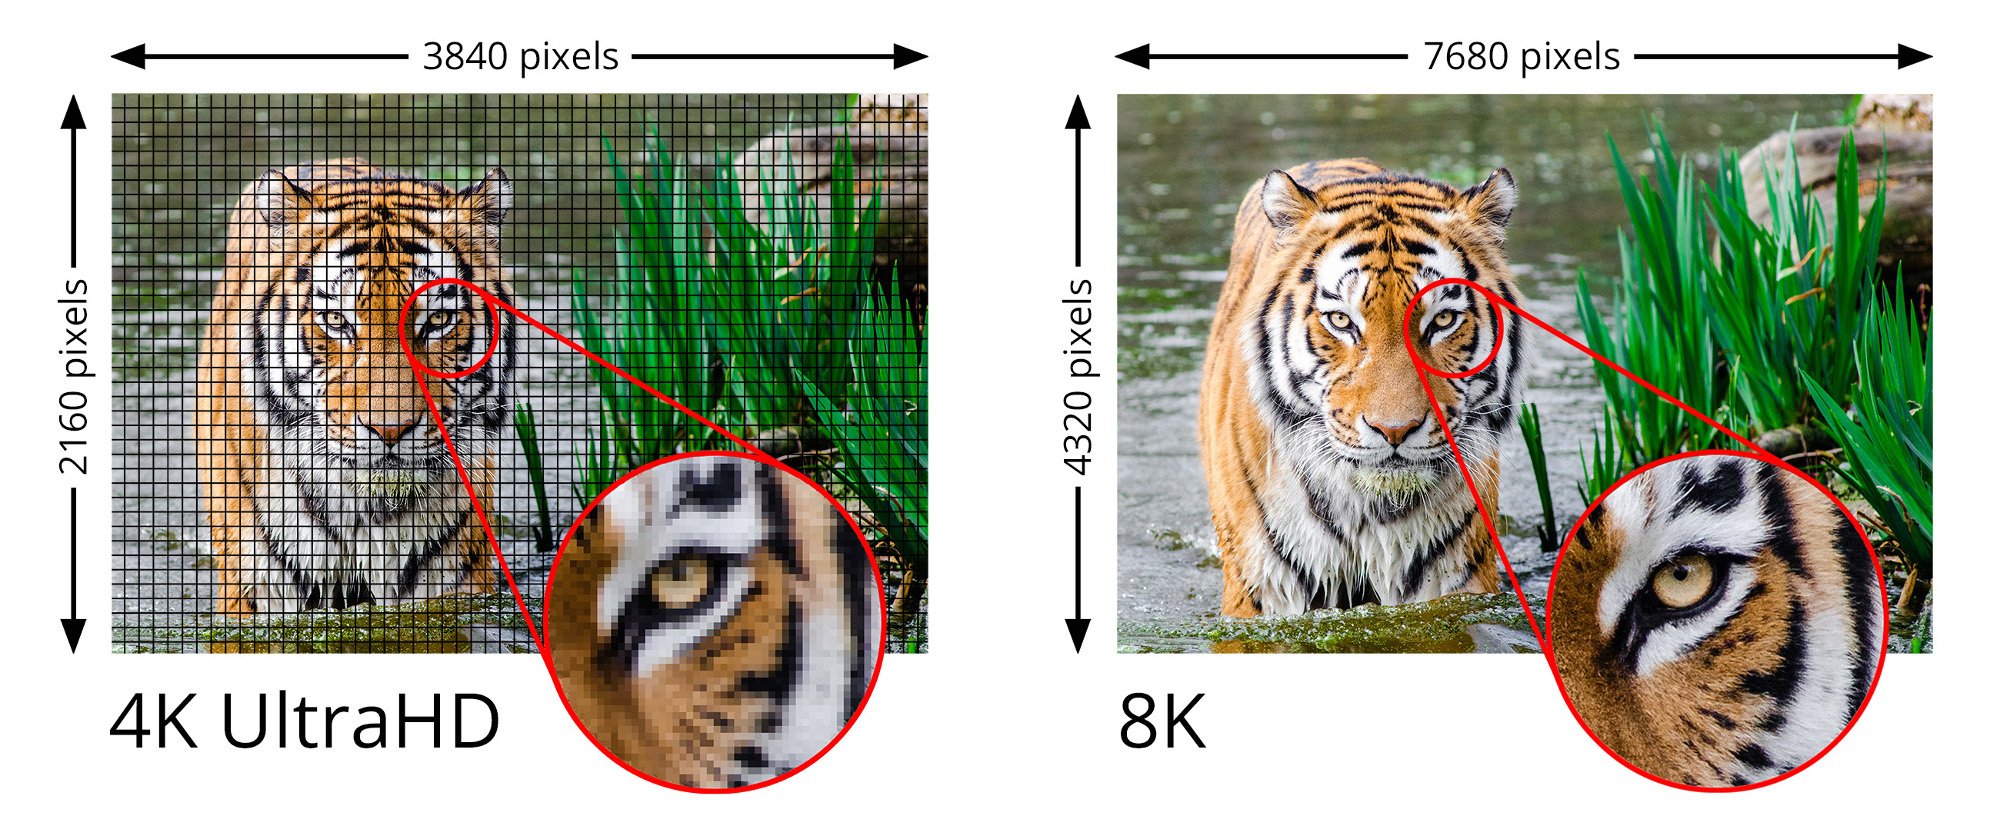 Die vielen Pixel der 8K-Auflösung machen das Bild einiges glatter (Bild: HDMI Forum)